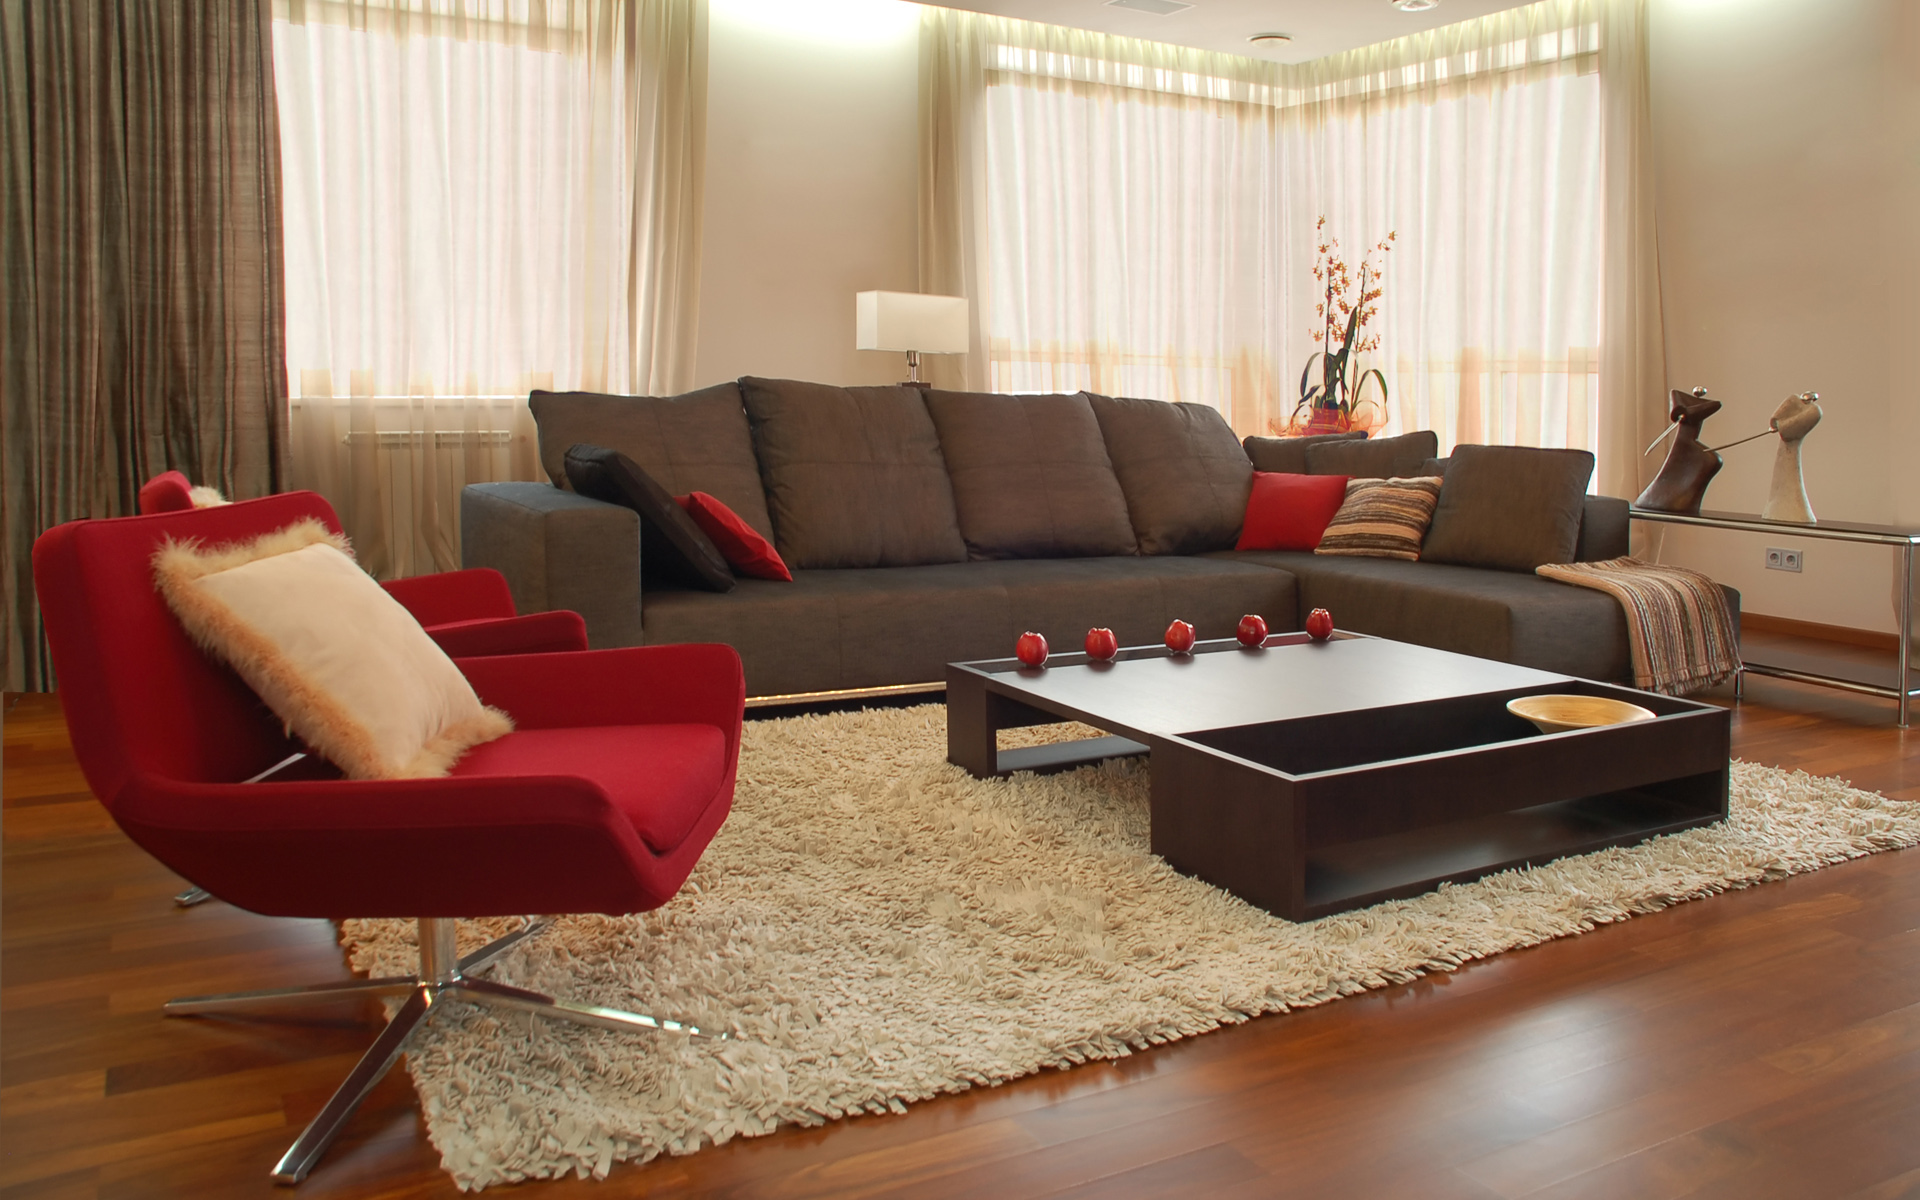 interior, furniture, wood floor - desktop wallpaper